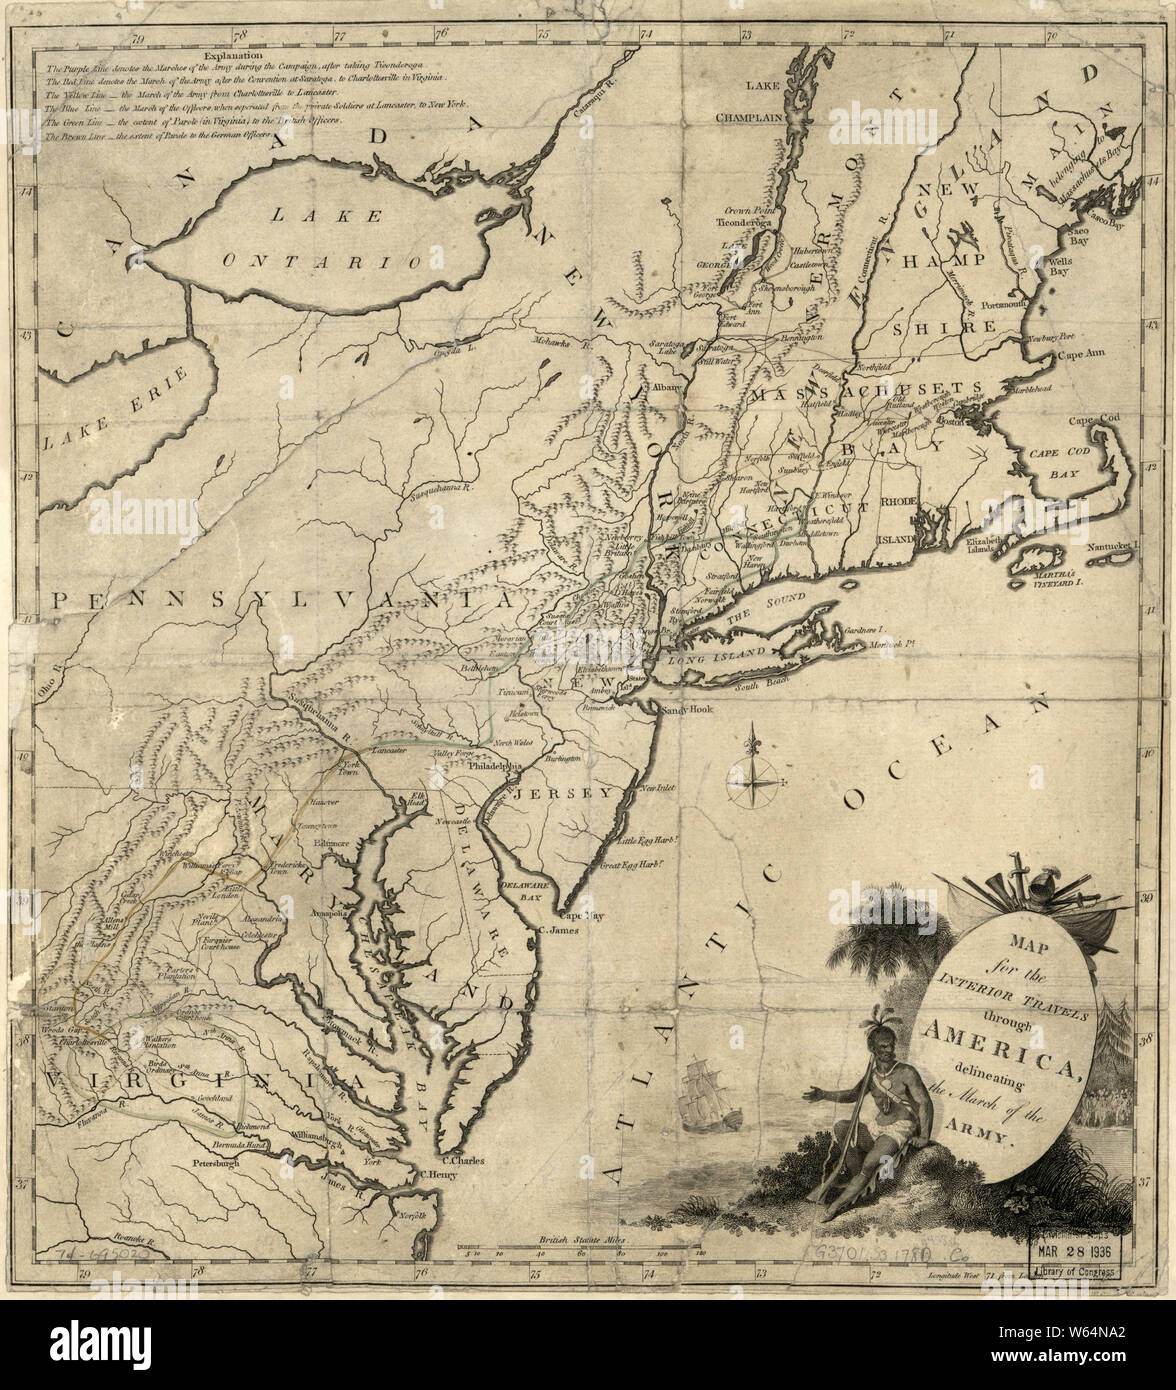 Amerikanischer Unabhängigkeitskrieg Ära Karten 1750-1786 584 Karte für  innere Reisen durch Amerika Abgrenzung der März der Armee wieder aufbauen  und Reparieren Stockfotografie - Alamy